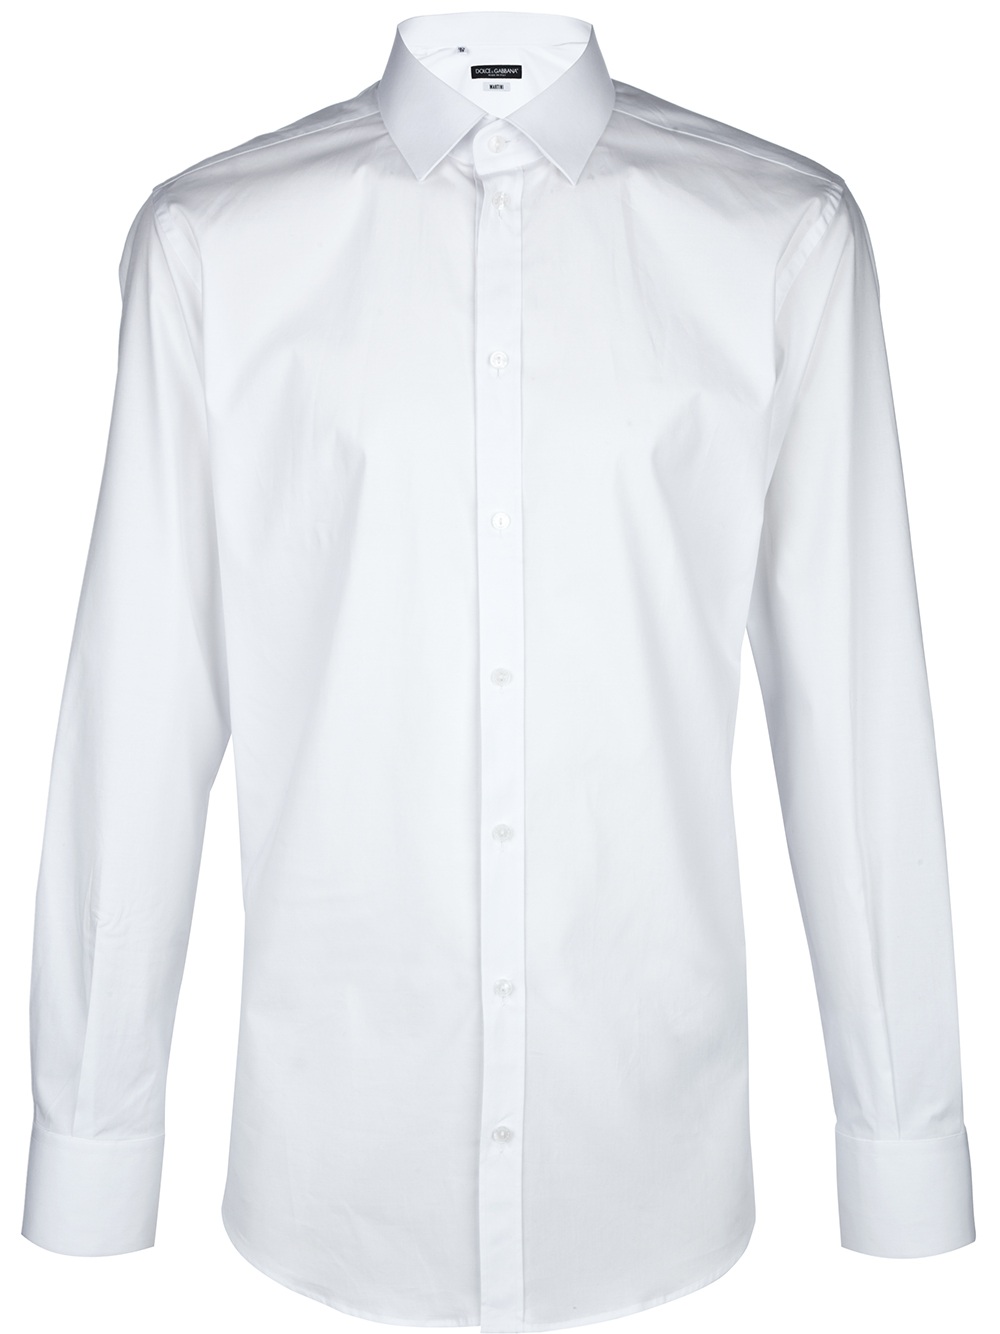 Dolce & Gabbana Martini Shirt in White for Men - Lyst